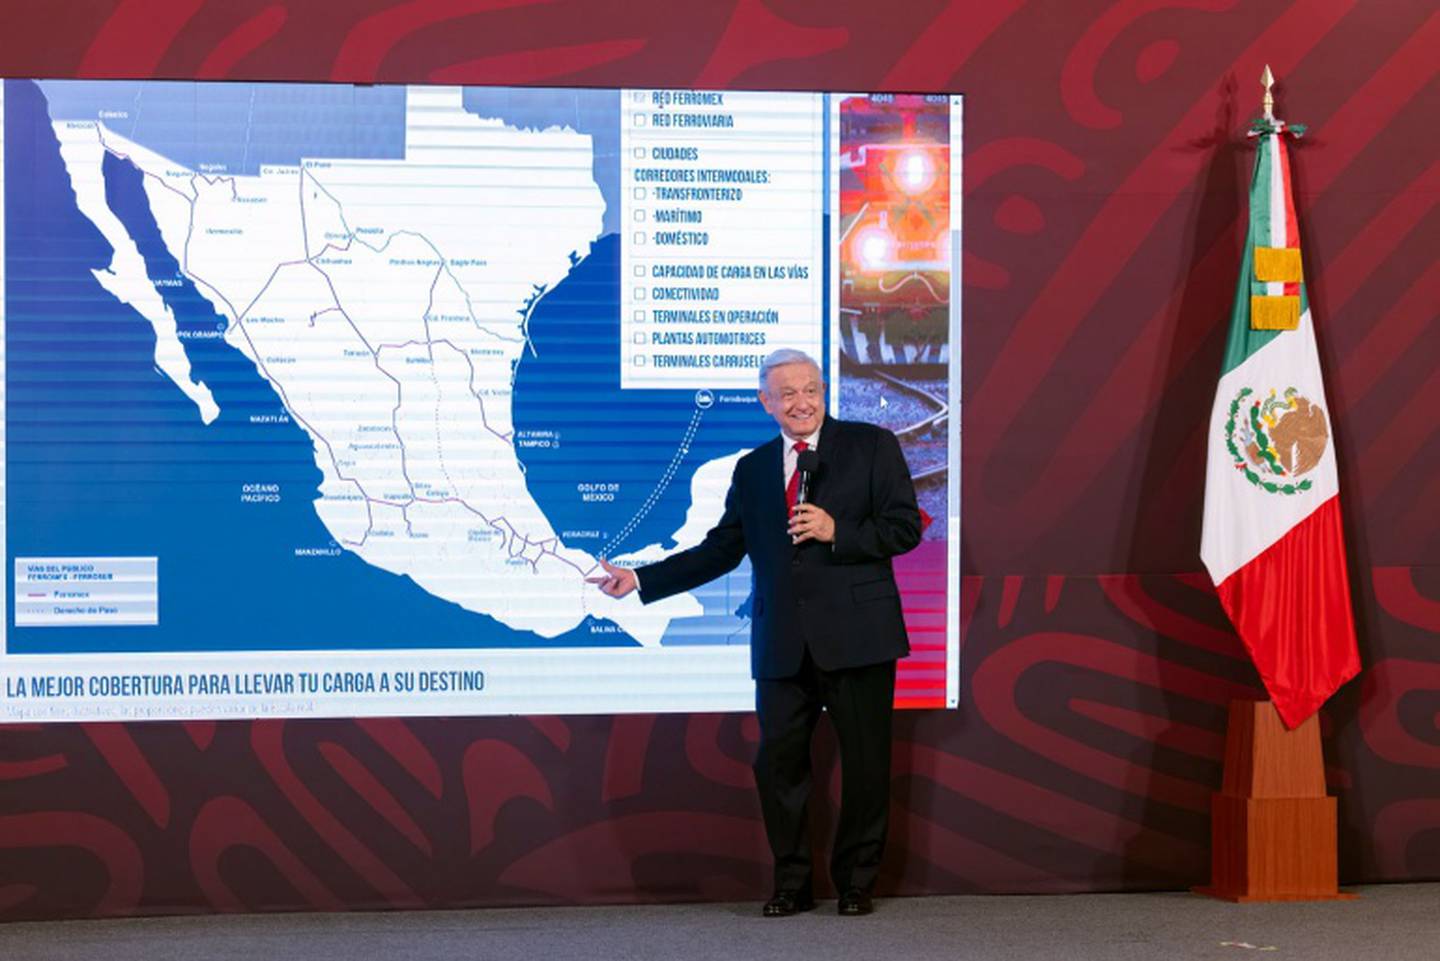 En una medida que conmocionó México, el presidente se apoderó de una sección de las vías férreas de Grupo México en el estado de Veracruz. Declarando el tramo como de “de utilidad pública”, lo transfirió a una entidad gubernamental. Imagen (Gobierno de México)